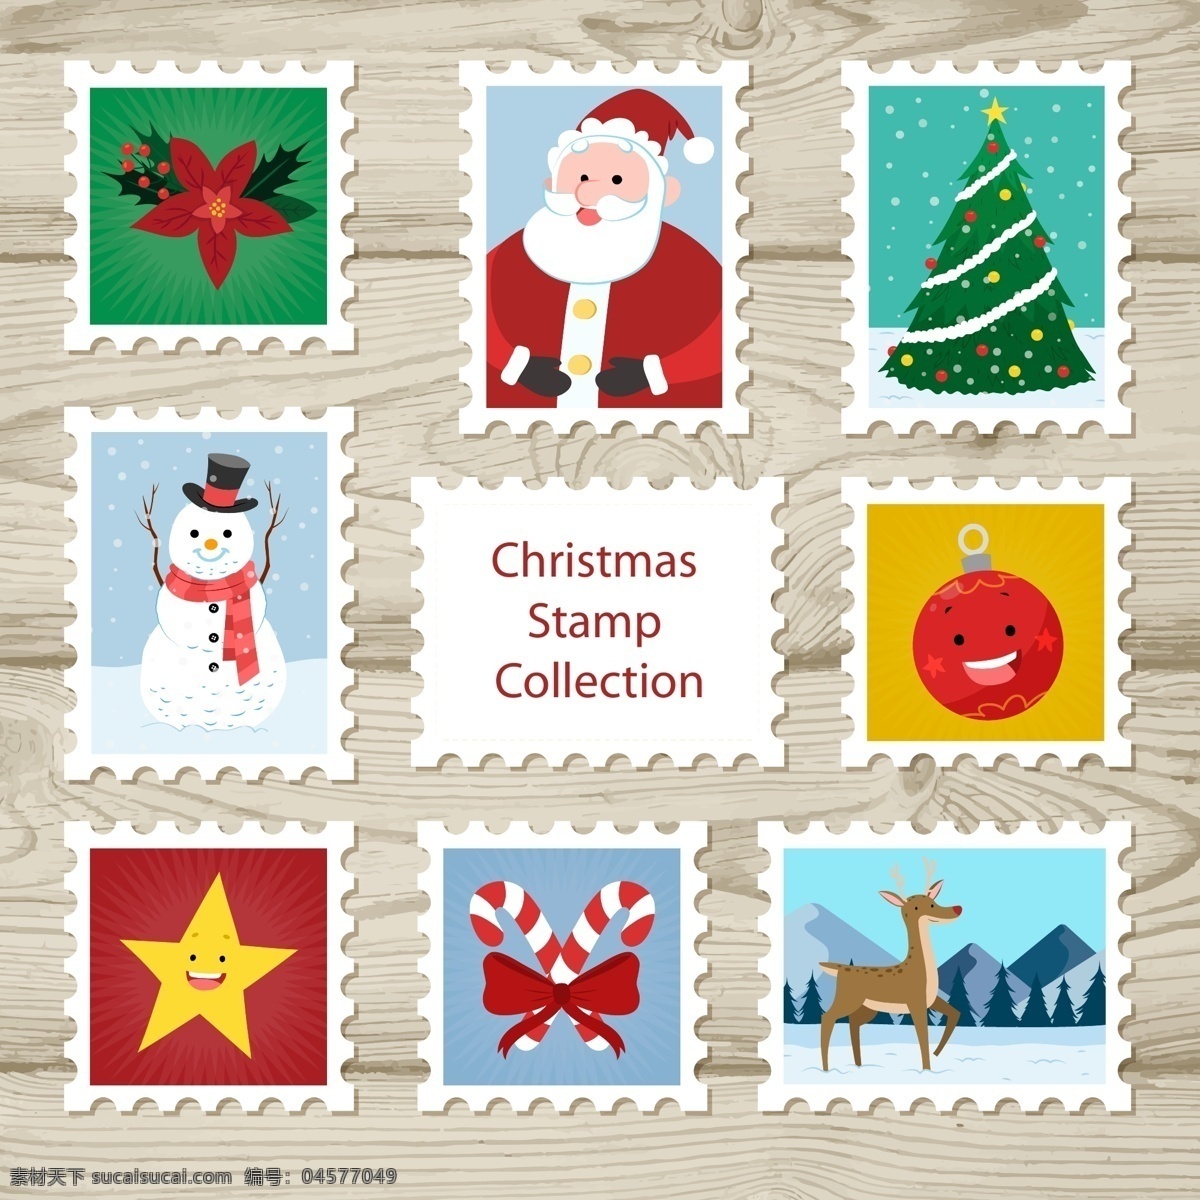 彩色 卡通 图案 圣诞 标签 圣诞树 星星 圣诞节 矢量素材 圣诞老人 雪人 驯鹿 糖果 邮票